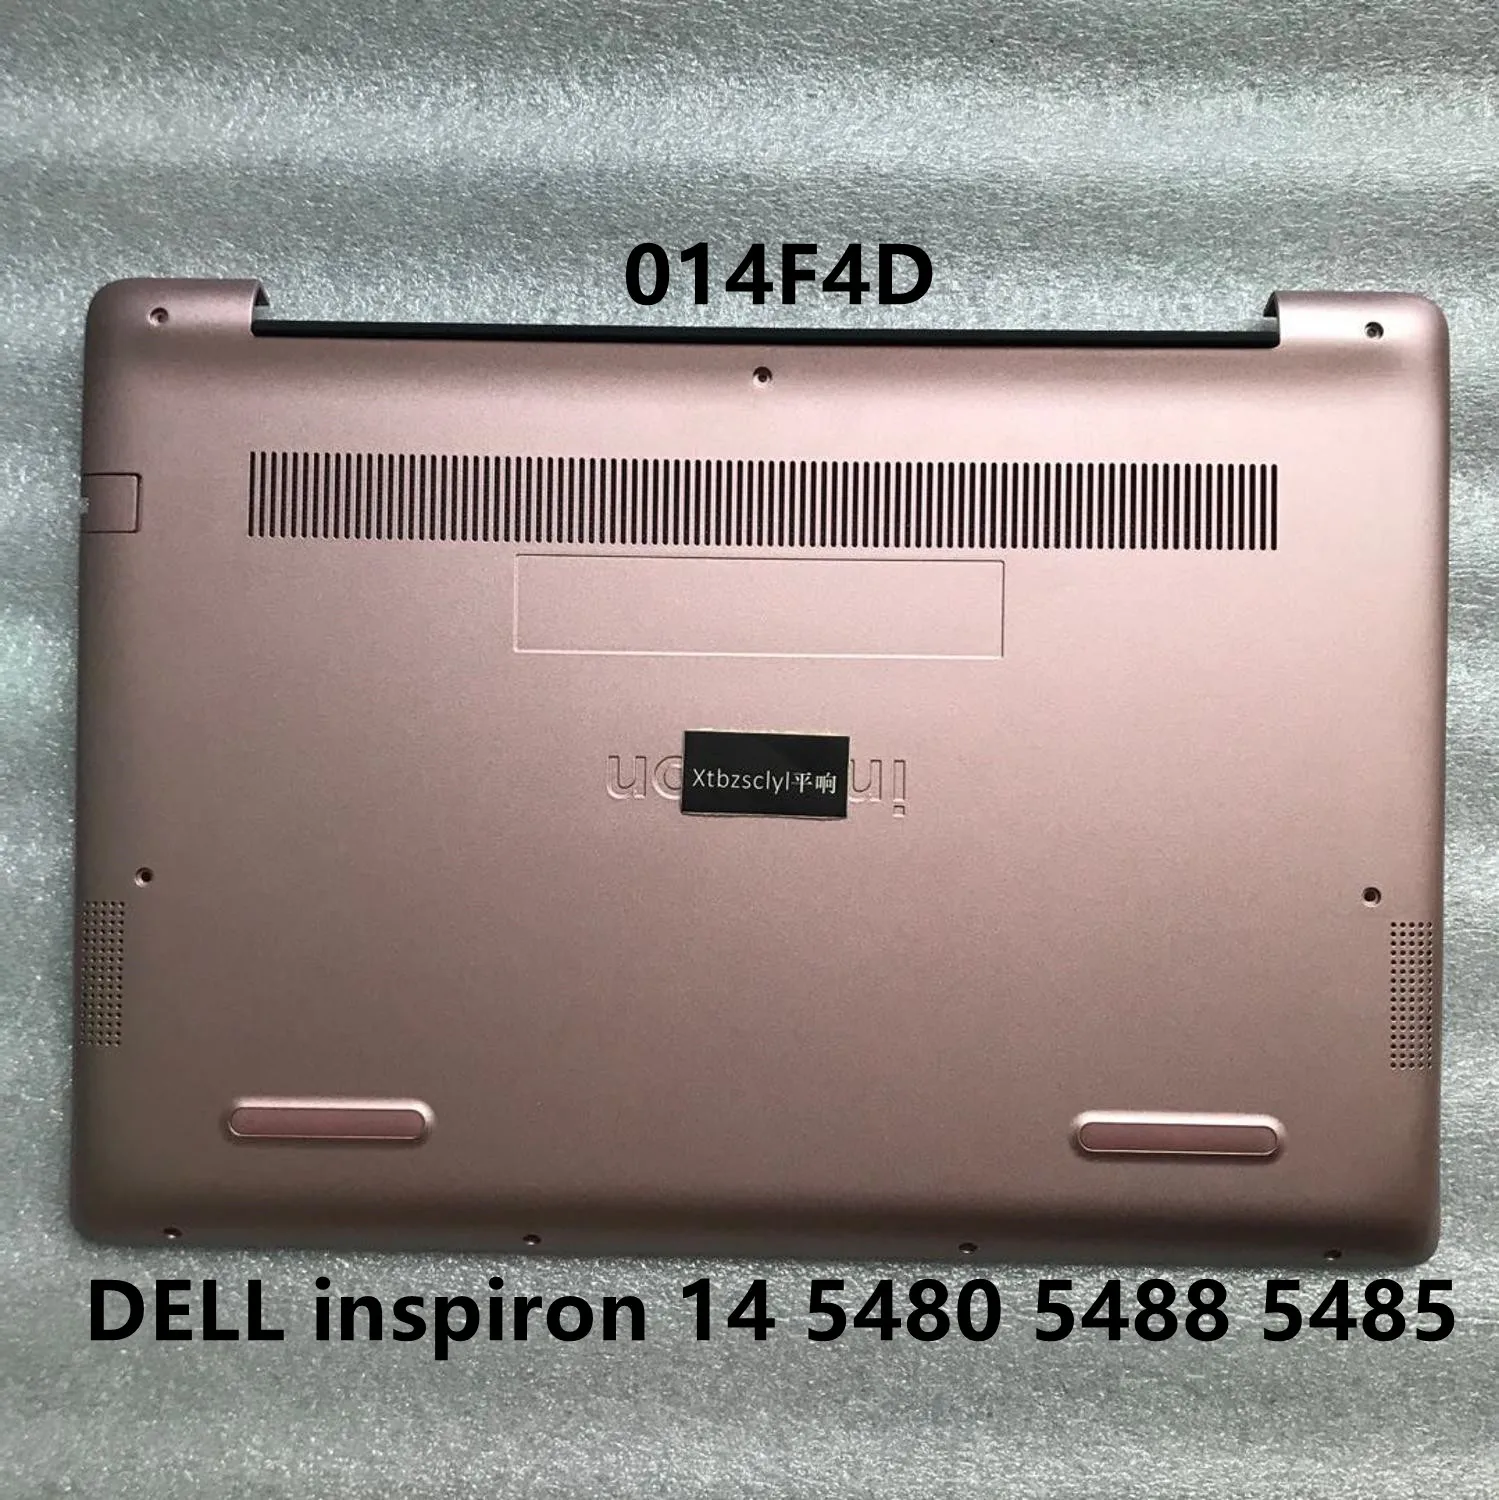 Для нового DELL inspiron 14 5480 5488 5485 розовый нижний корпус для ноутбука D корпус 014F4D 14F4D от AliExpress WW